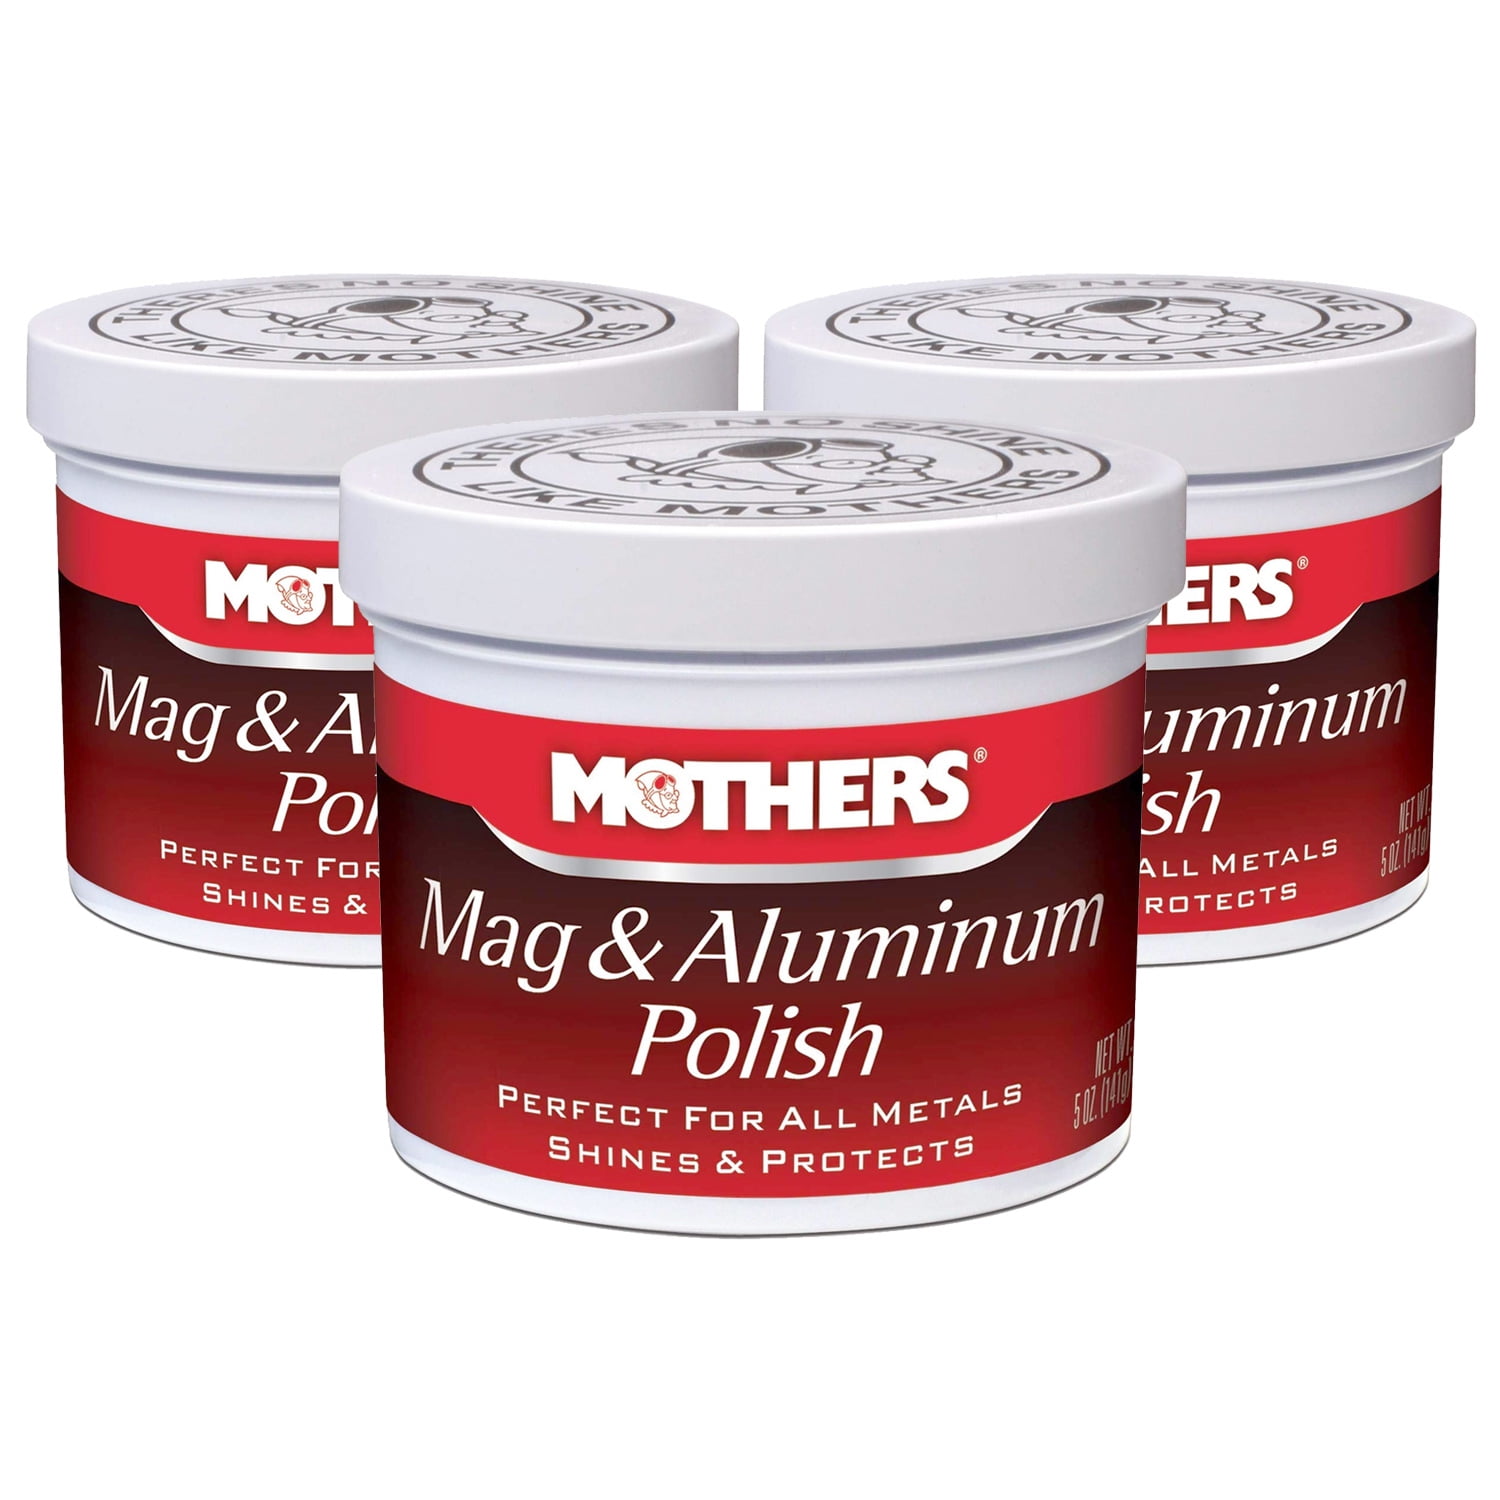 How to polish aluminum and magnesium - Mothers Mag & Aluminium